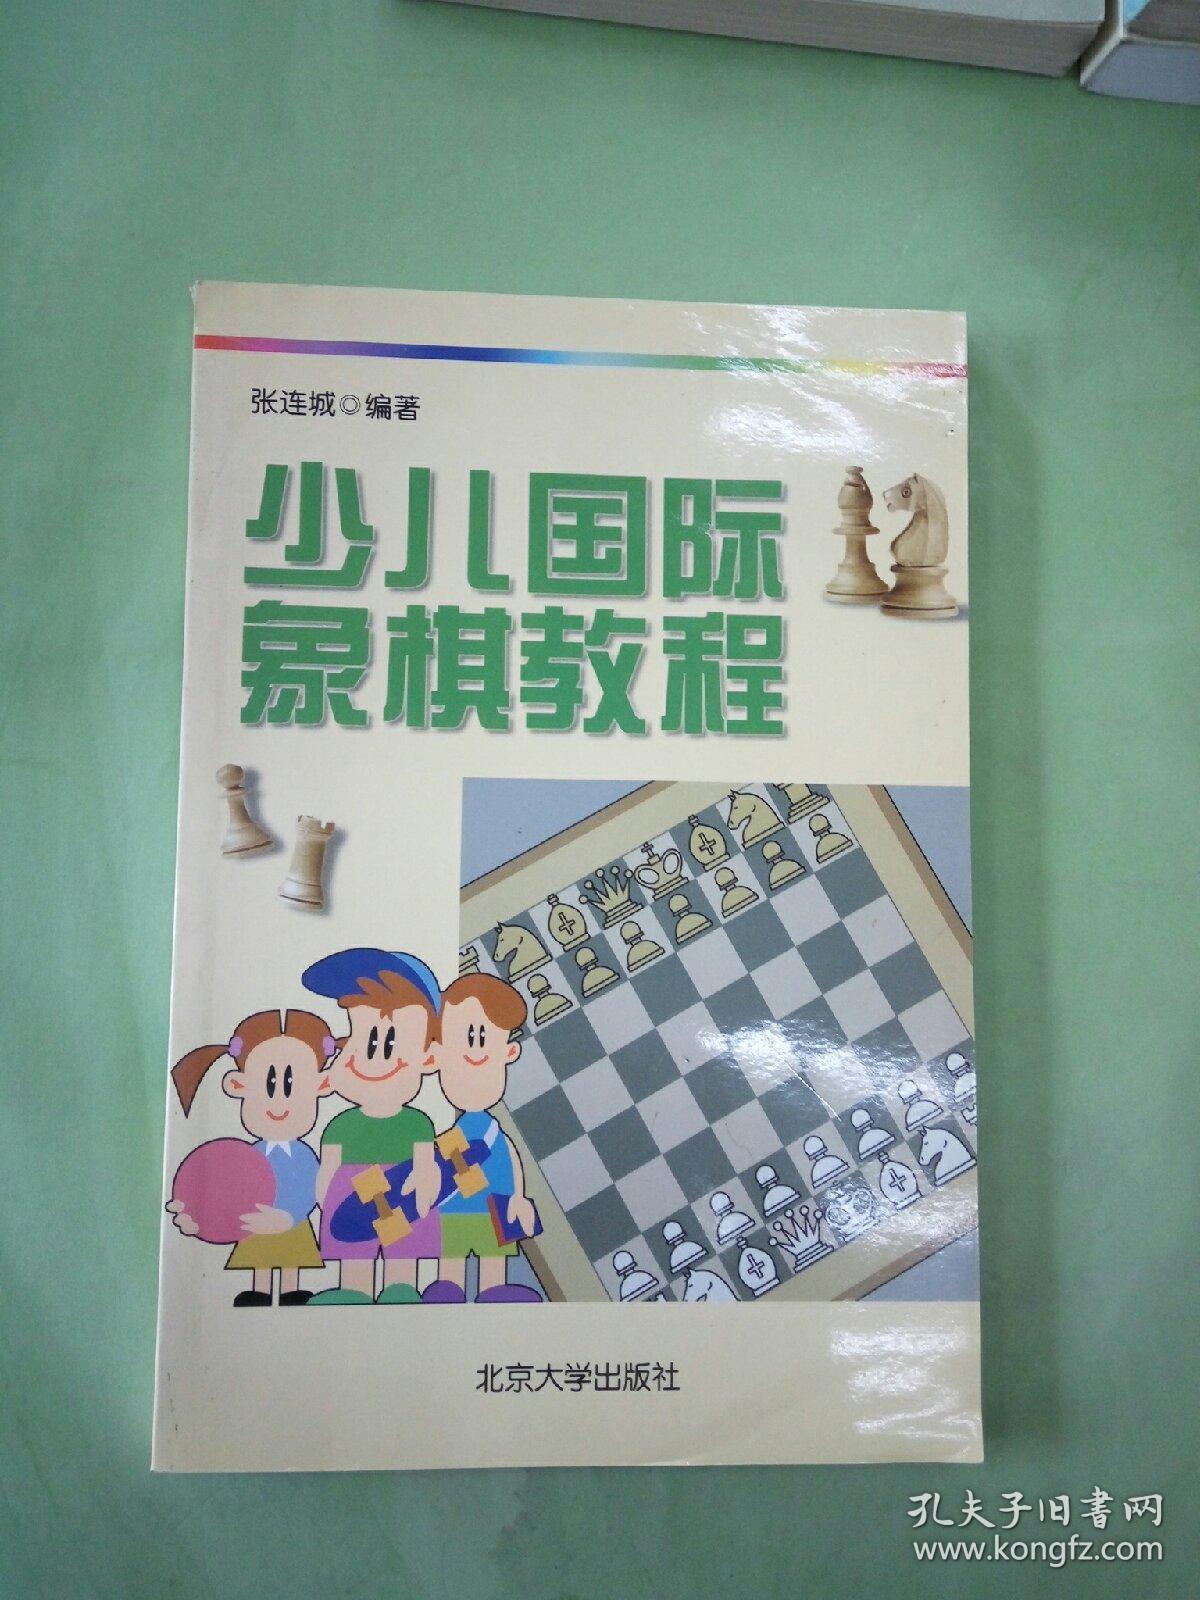 少儿国际象棋教程。